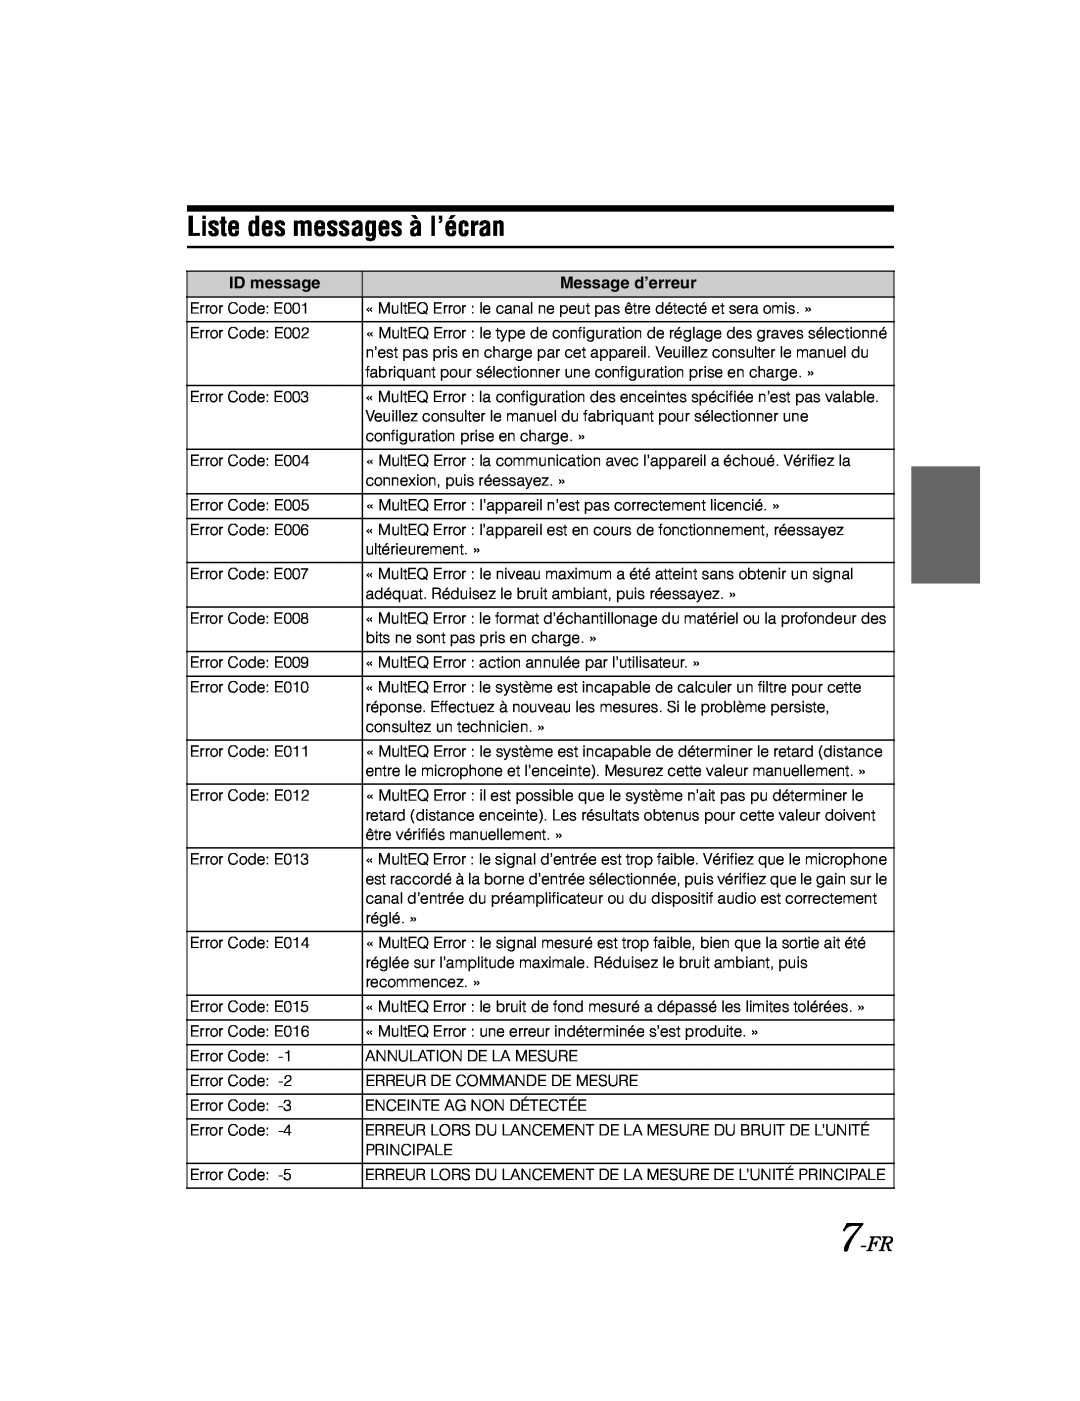 Alpine KTX-100EQ owner manual Liste des messages à l’écran, 7-FR 